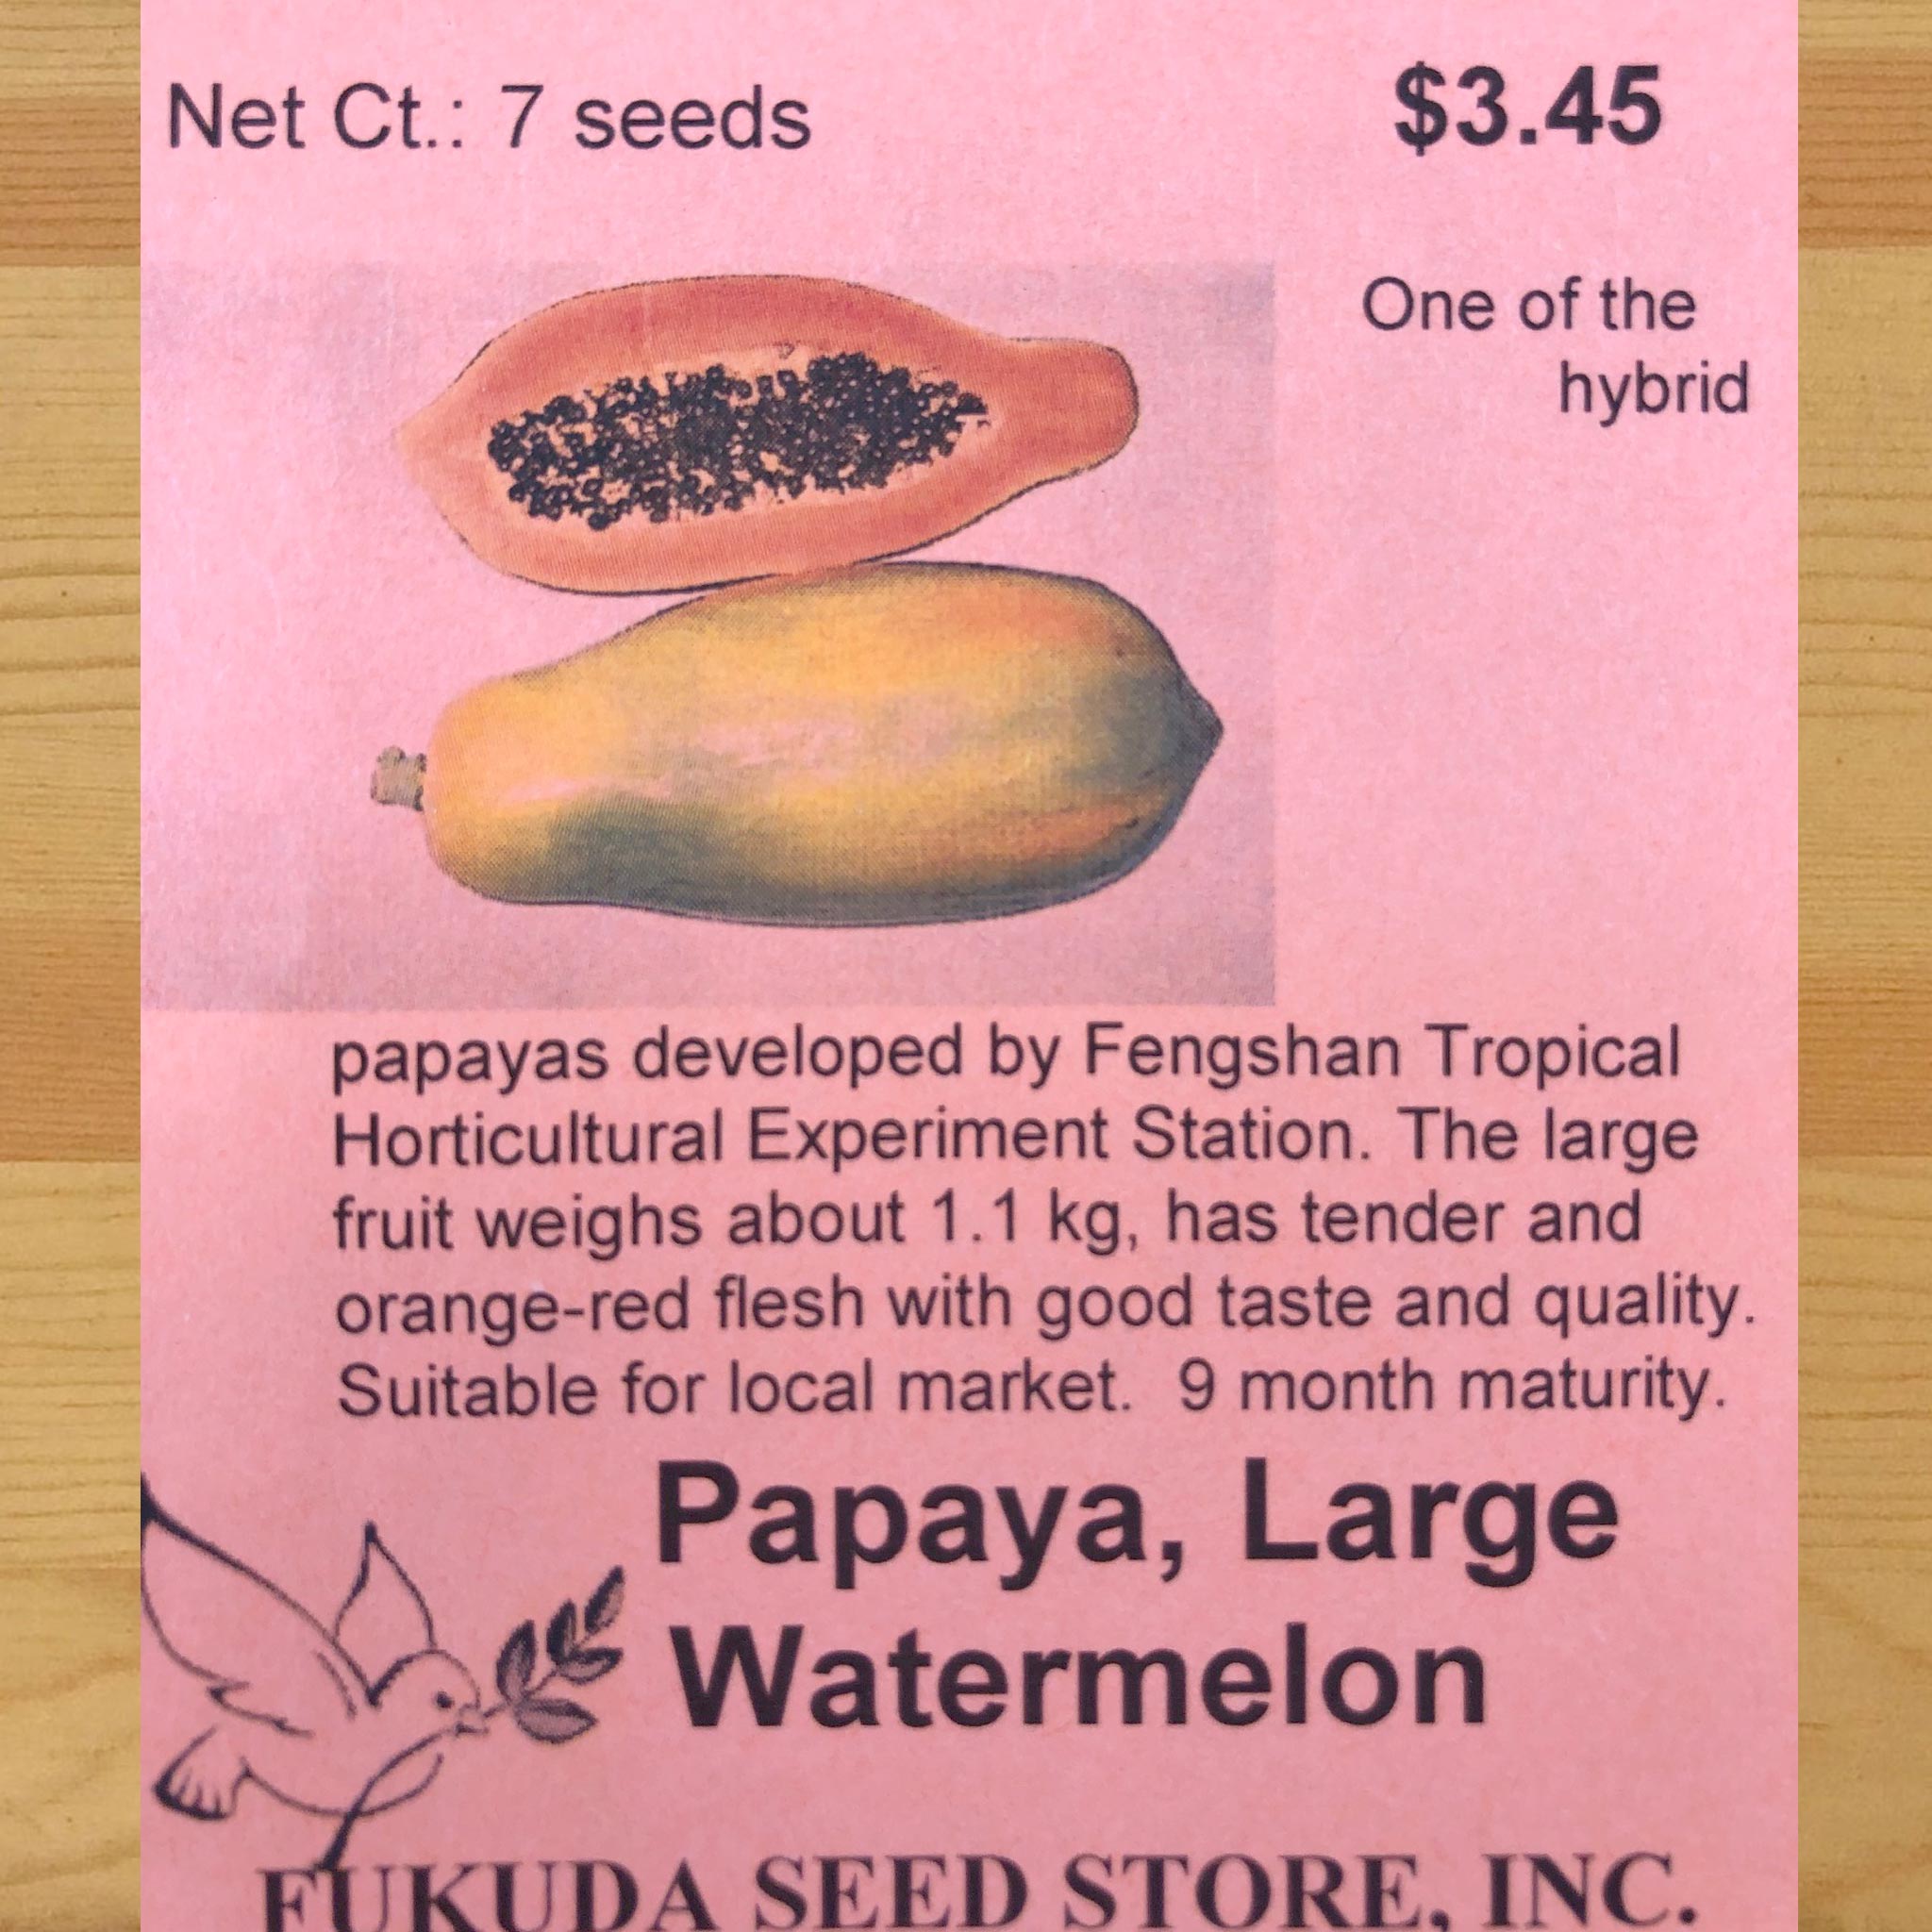 Papaya, Large Watermelon